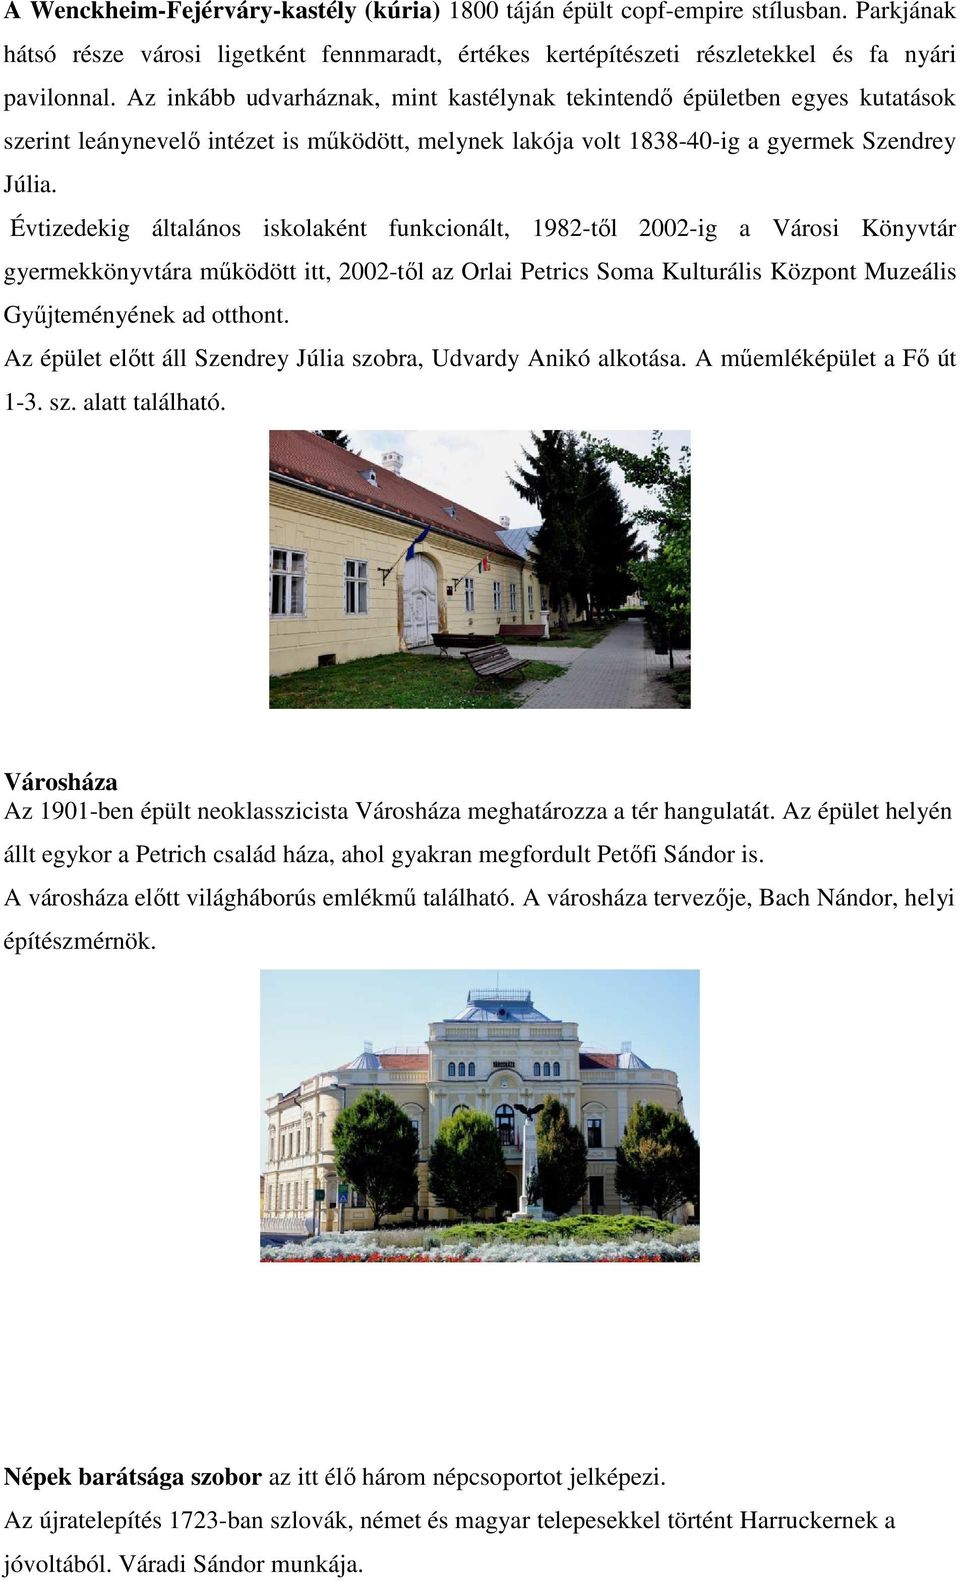 Évtizedekig általános iskolaként funkcionált, 1982-től 2002-ig a Városi Könyvtár gyermekkönyvtára működött itt, 2002-től az Orlai Petrics Soma Kulturális Központ Muzeális Gyűjteményének ad otthont.